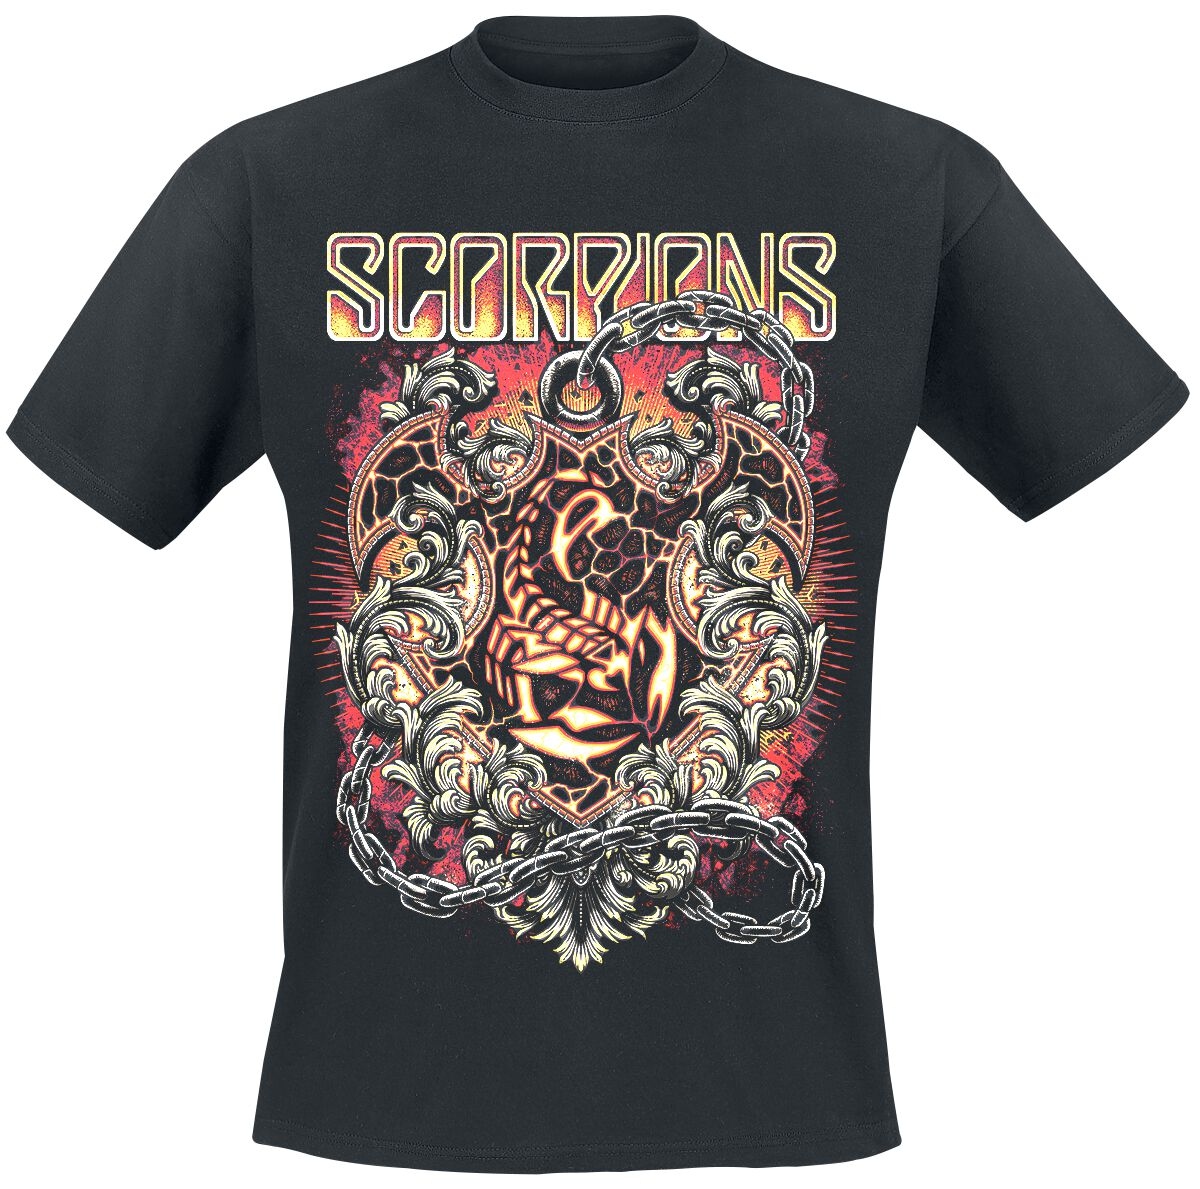 scorpions t-shirt - crest in chains - m bis 3xl - fÃ¼r mÃ¤nner - grÃ¶ÃŸe xl - - lizenziertes merchandise! schwarz